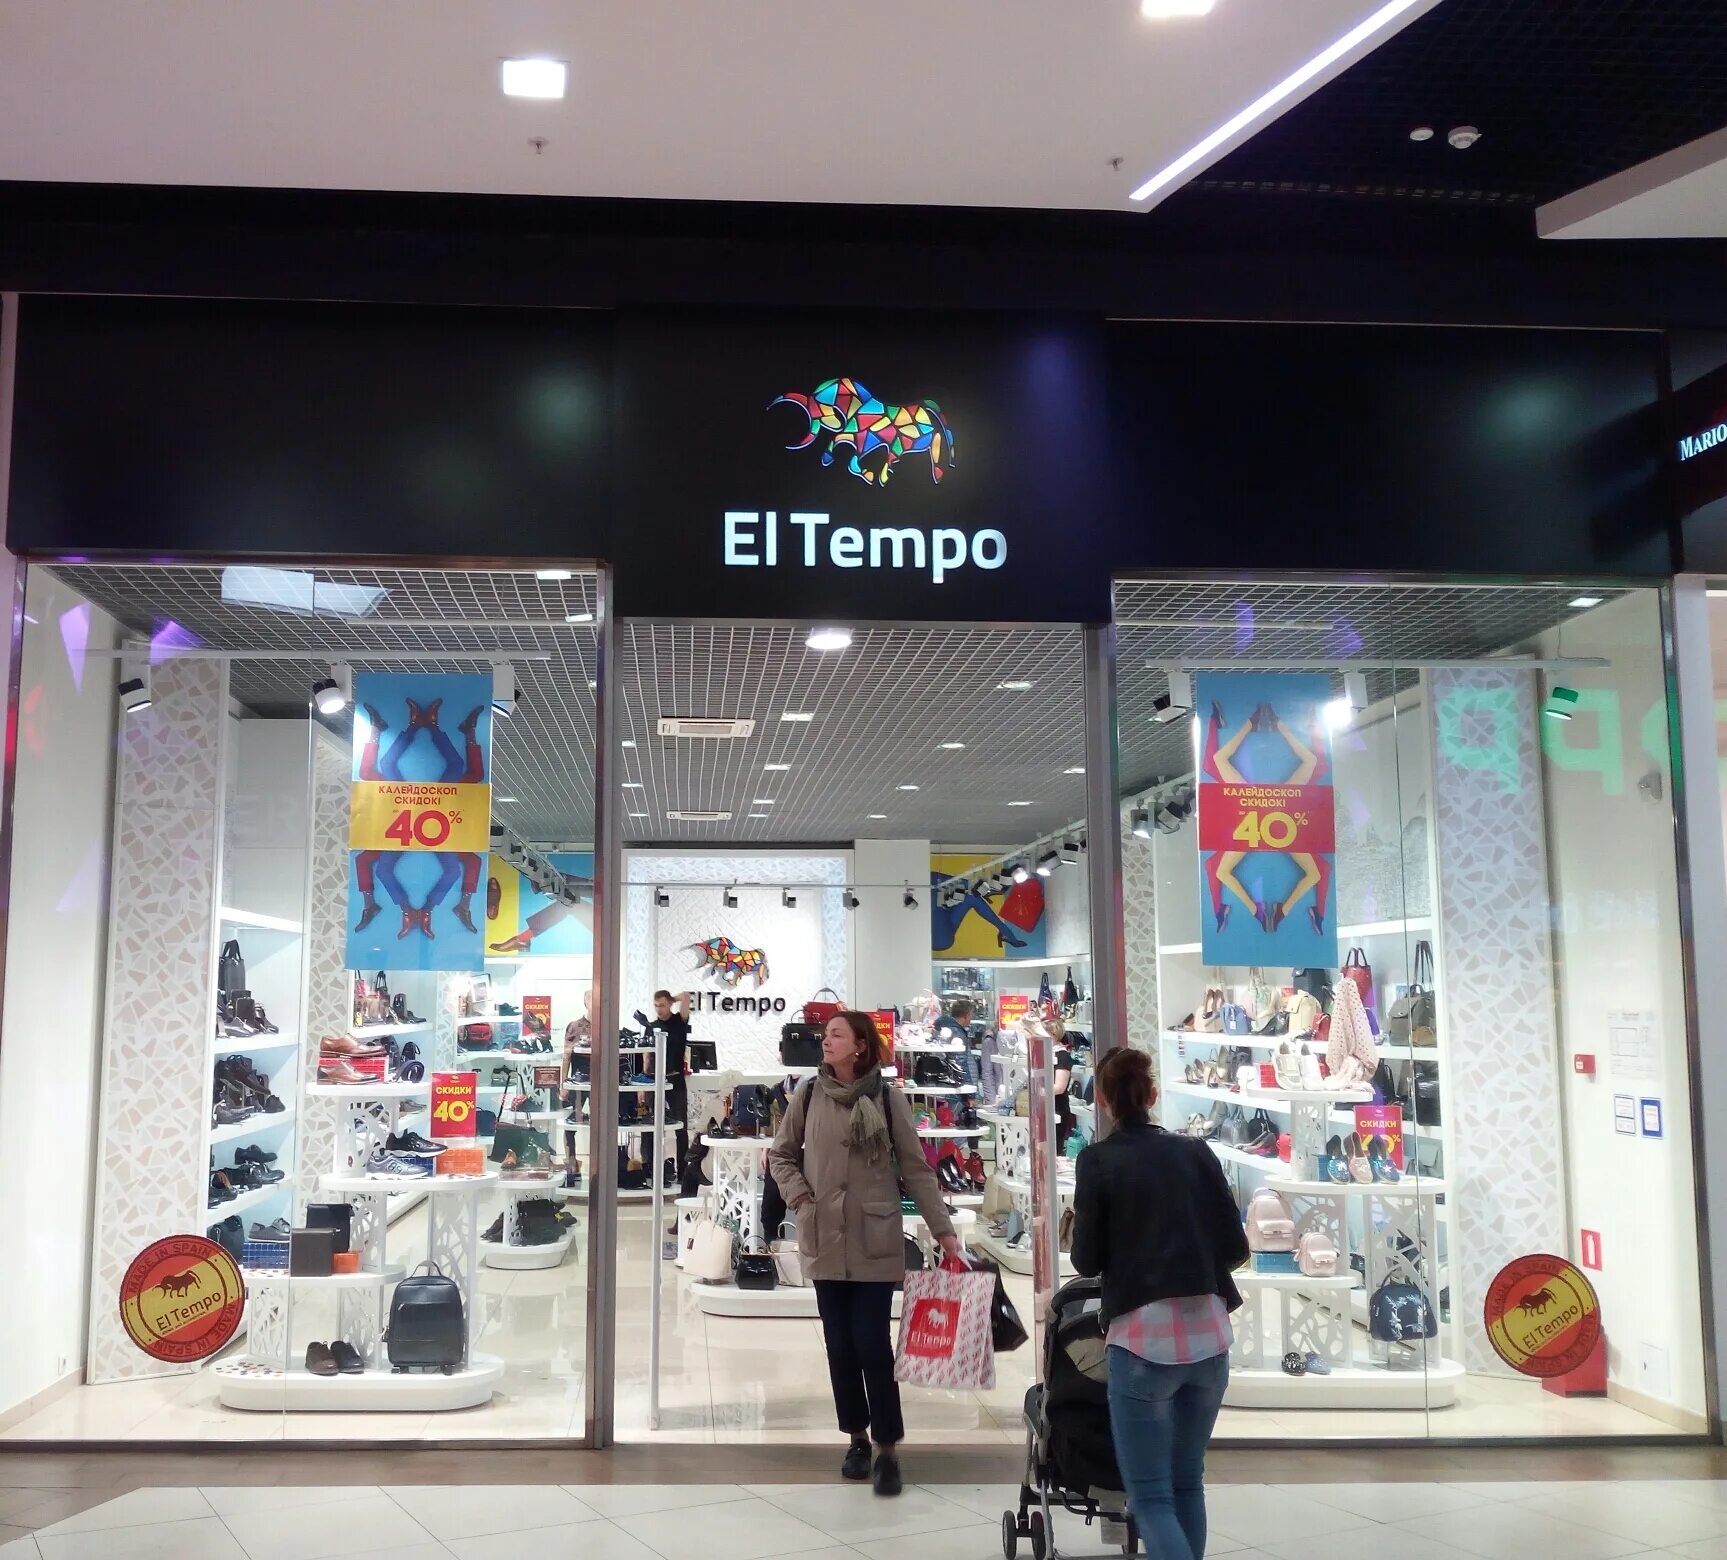 Эльтемпо. El tempo обувь магазин Columbus. El tempo Калейдоскоп. Испанский магазин одежды. Магазин испанской обуви.